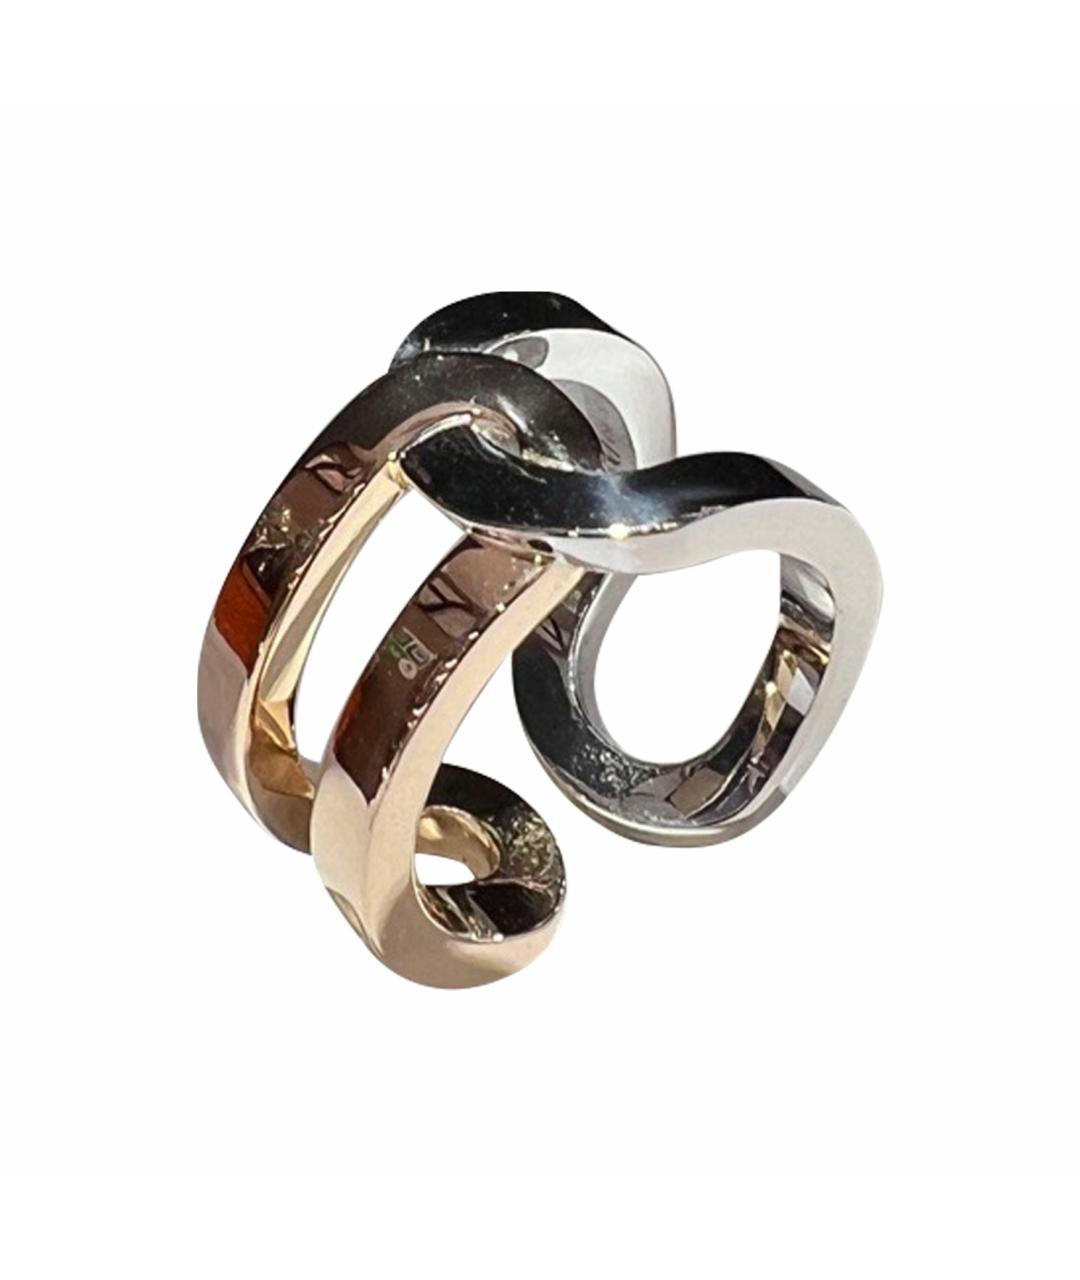 PIAGET Серебряное кольцо из белого золота, фото 1